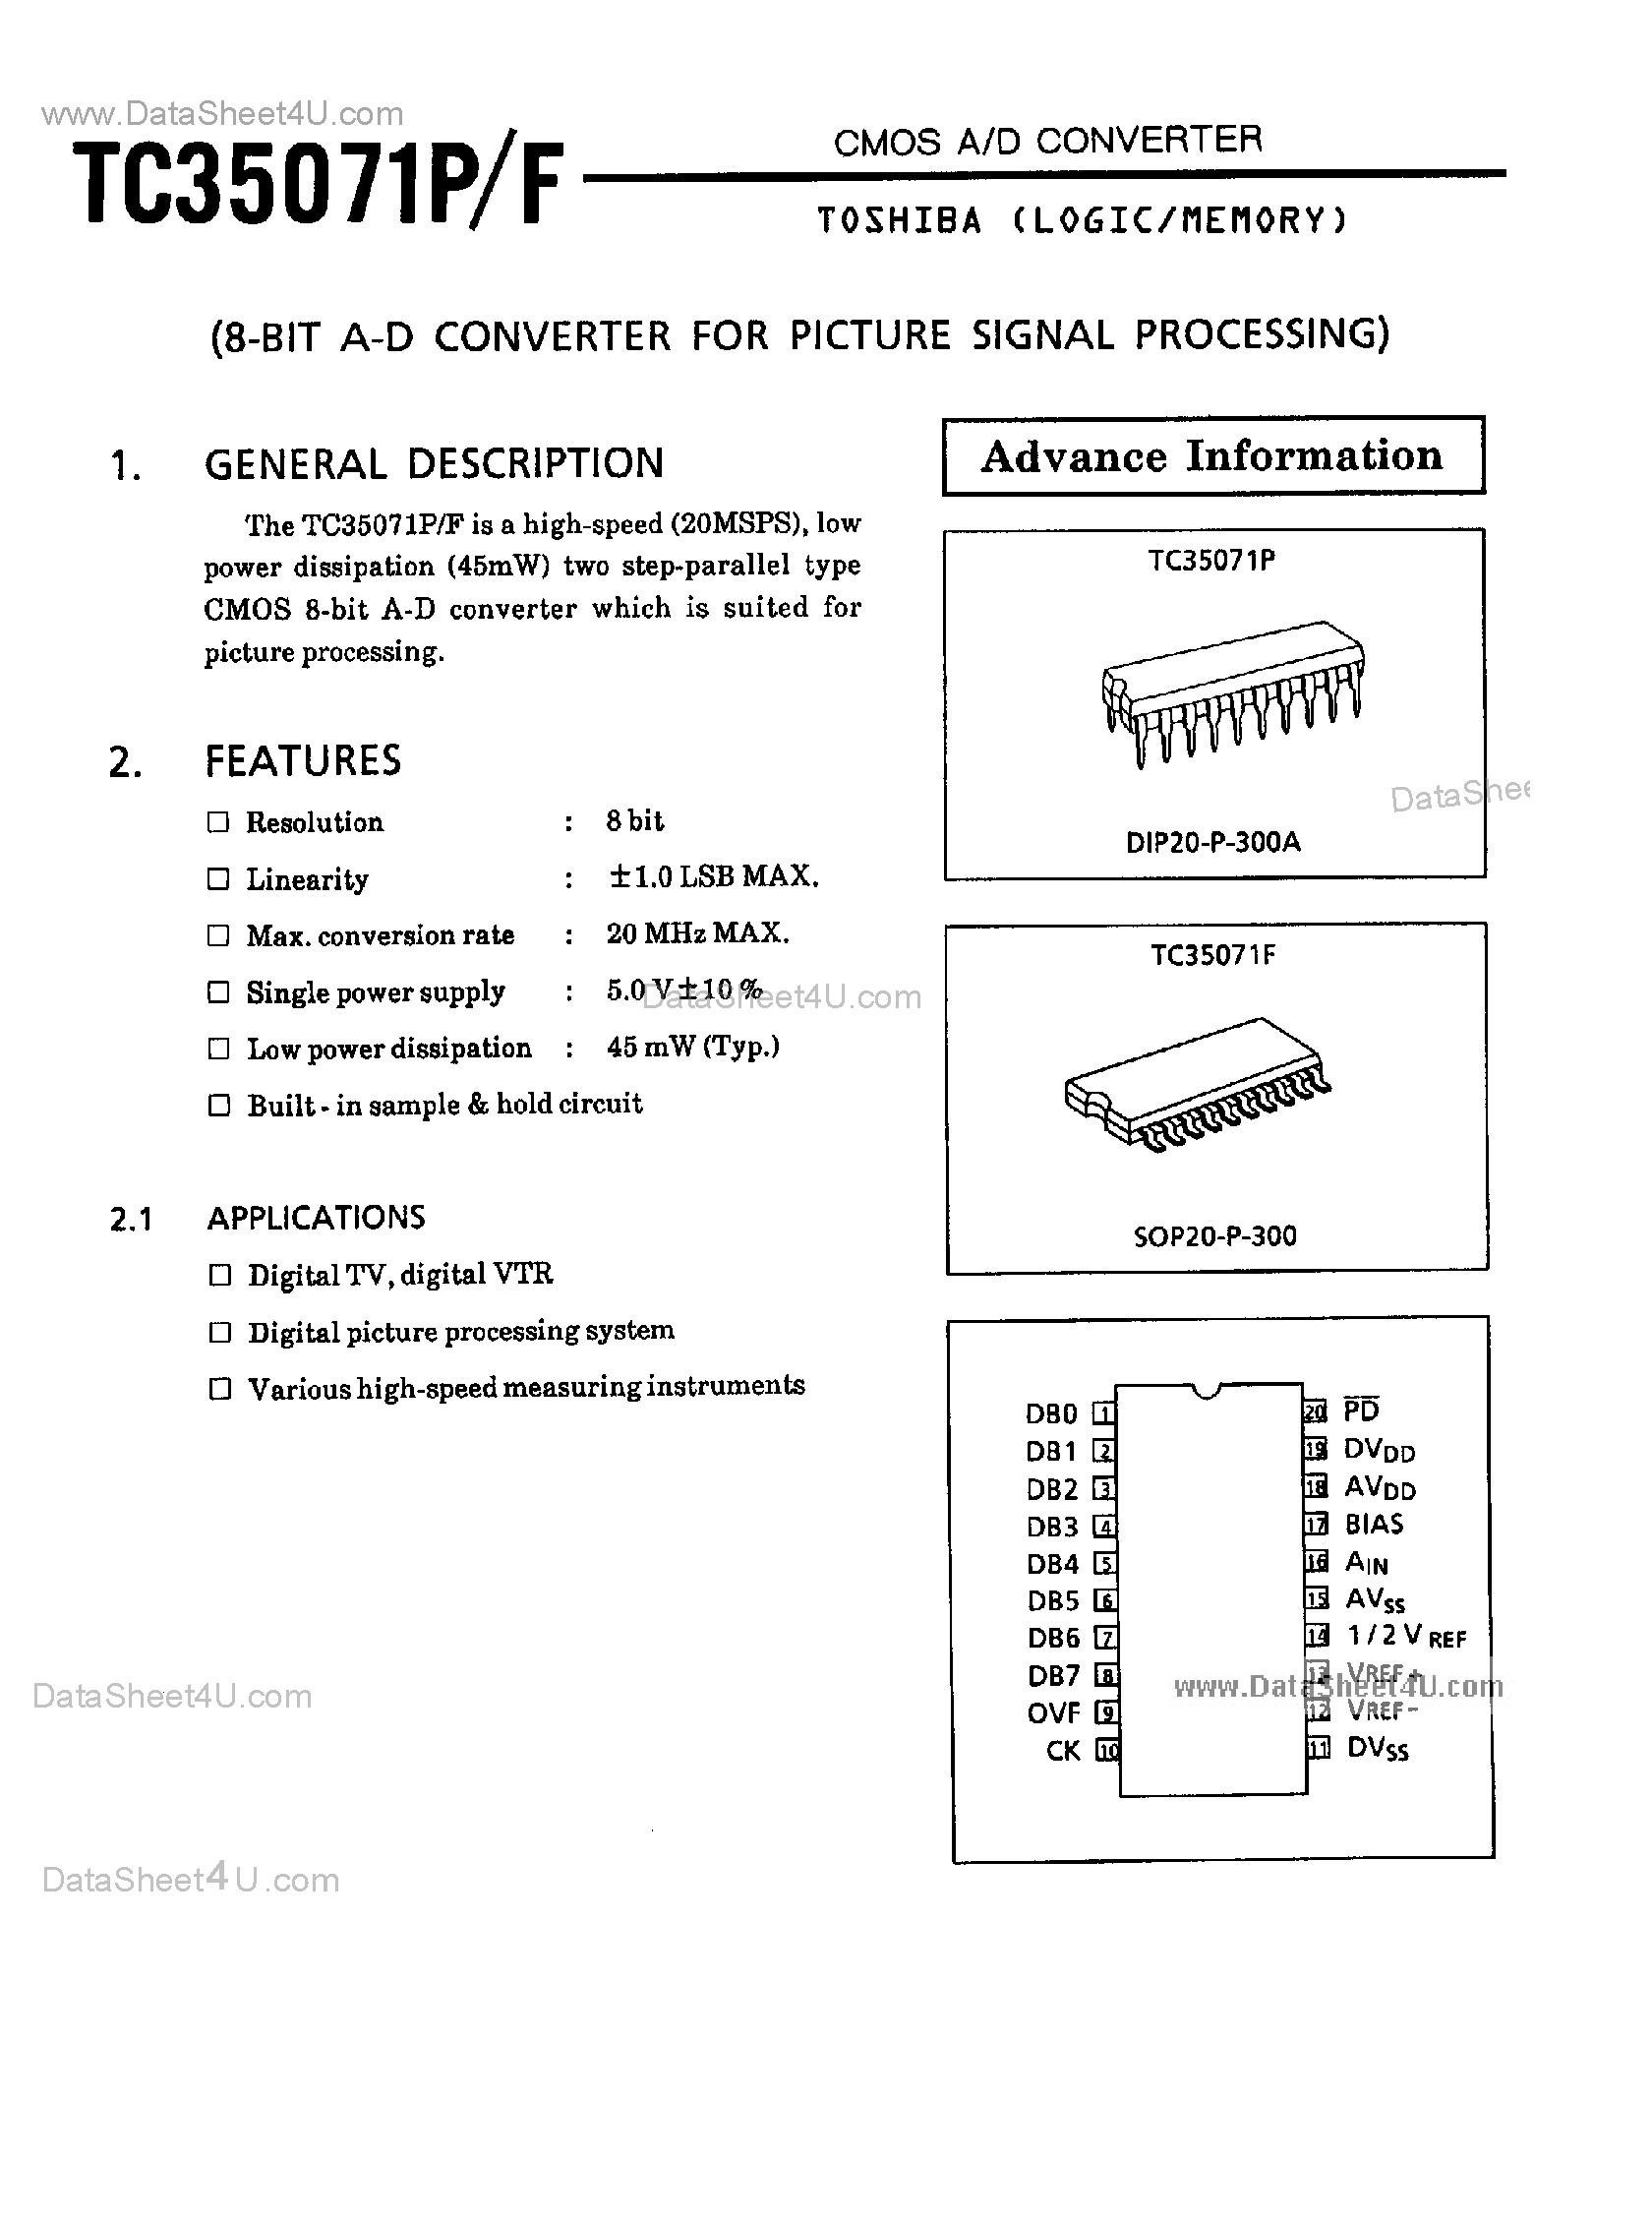 Даташит TC35071F - 8-Bit A/D Converter страница 1